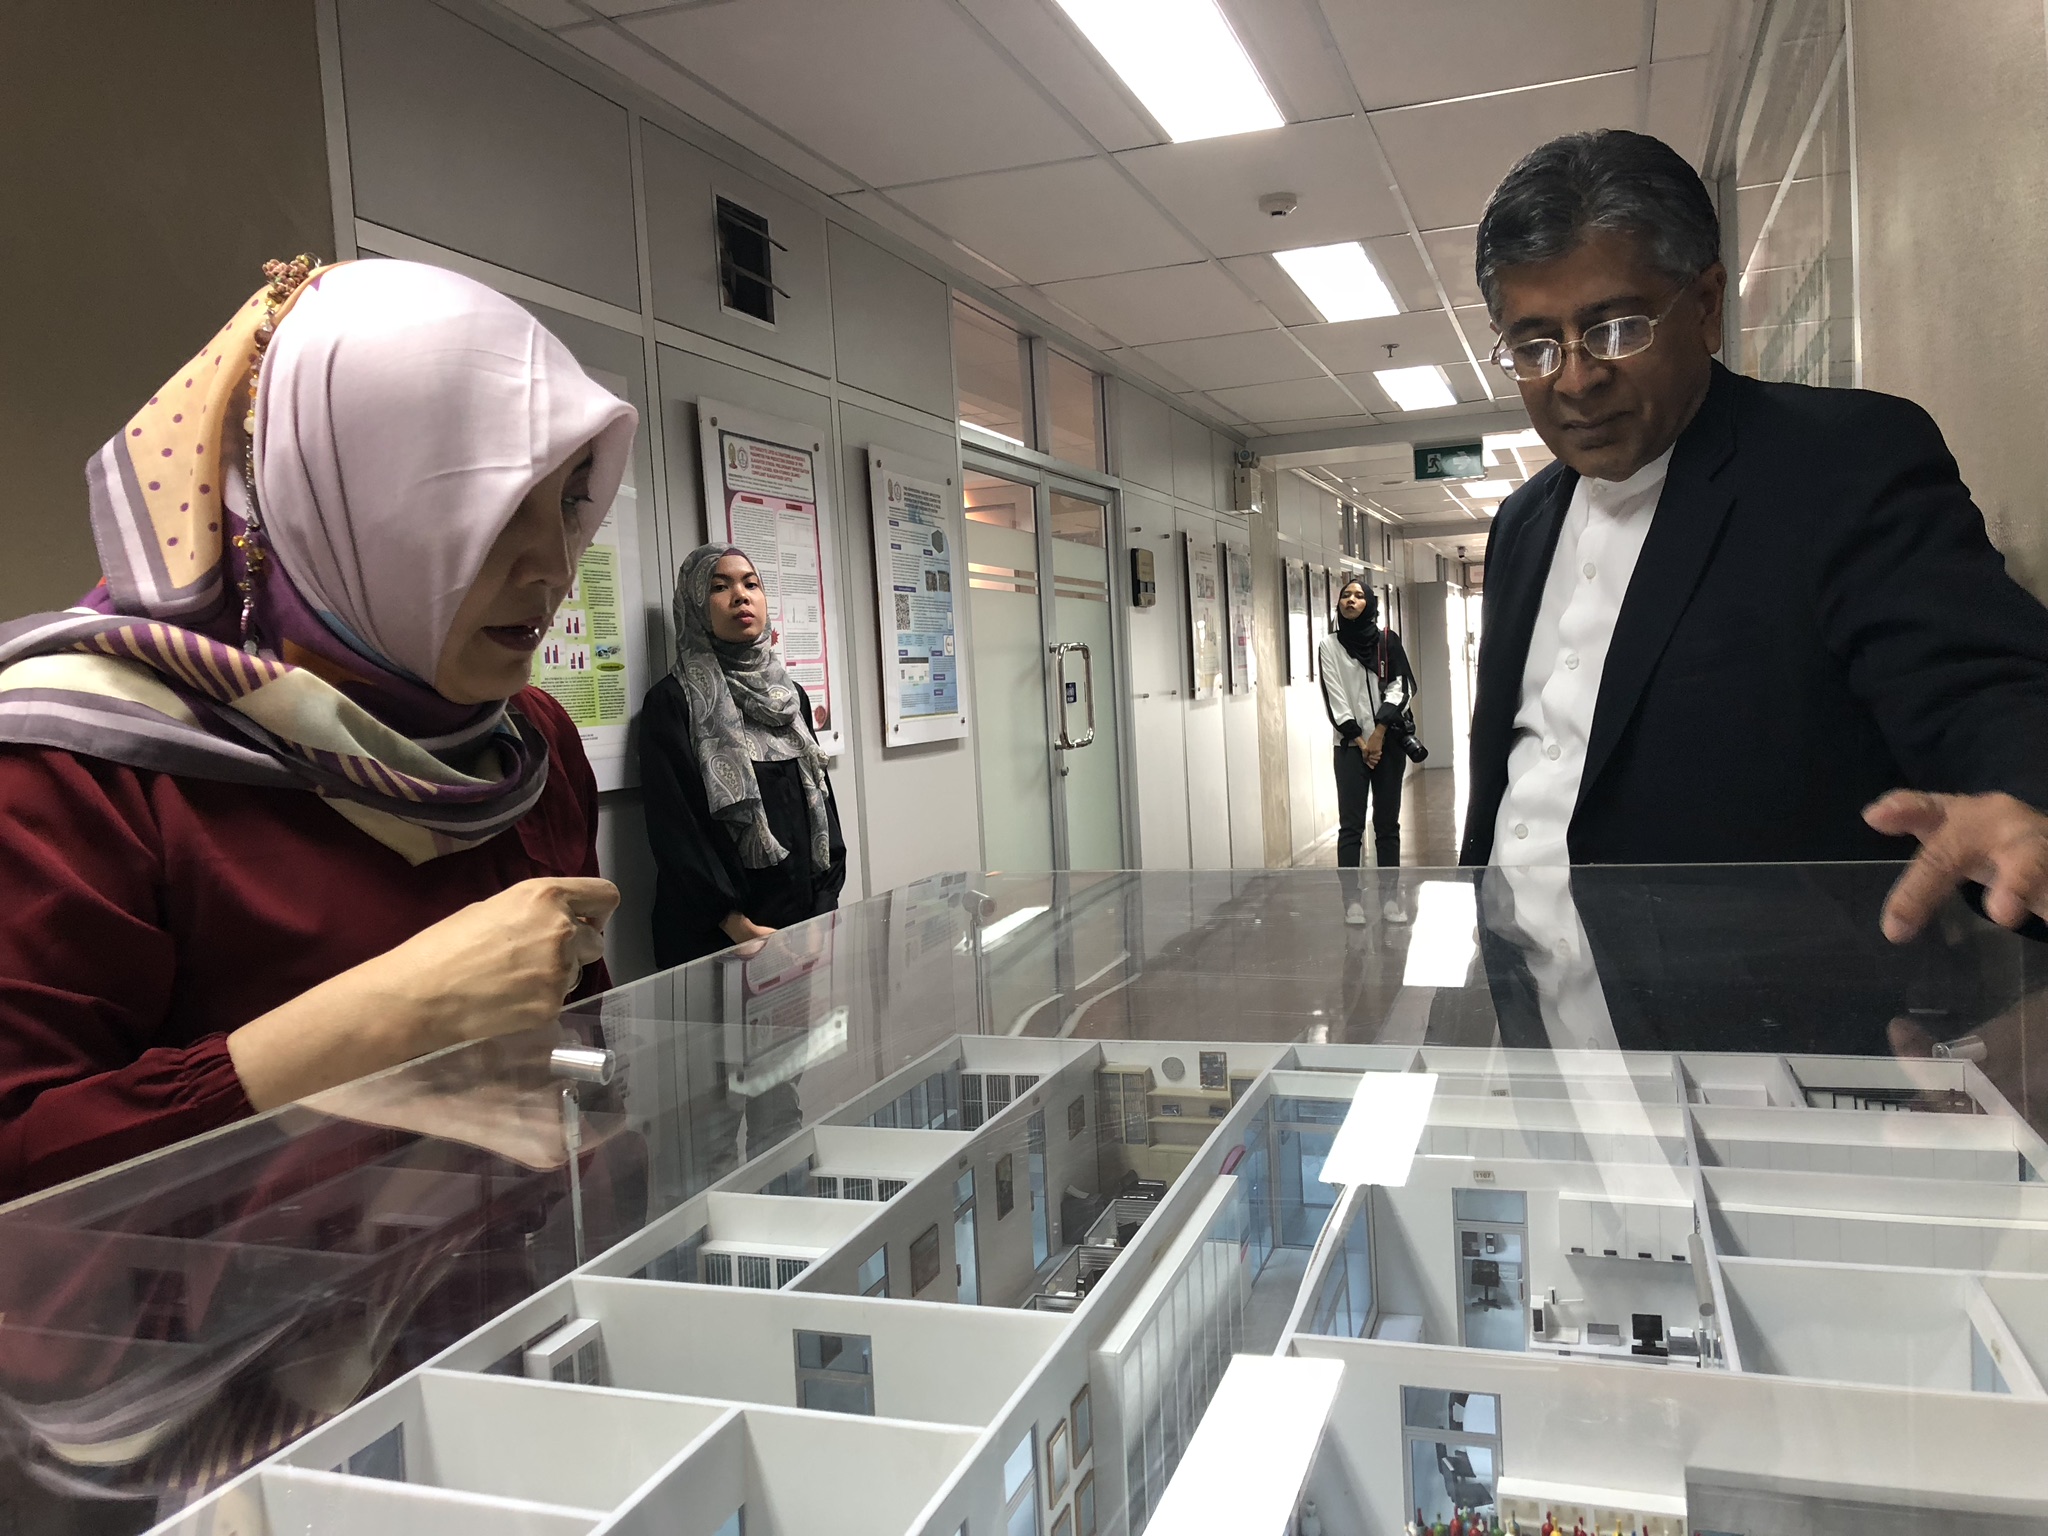 Manat Suebsantikul menjelaskan maket lab the halal science center kepada tamunya. (Arif Afandi/ngopibareng.id)